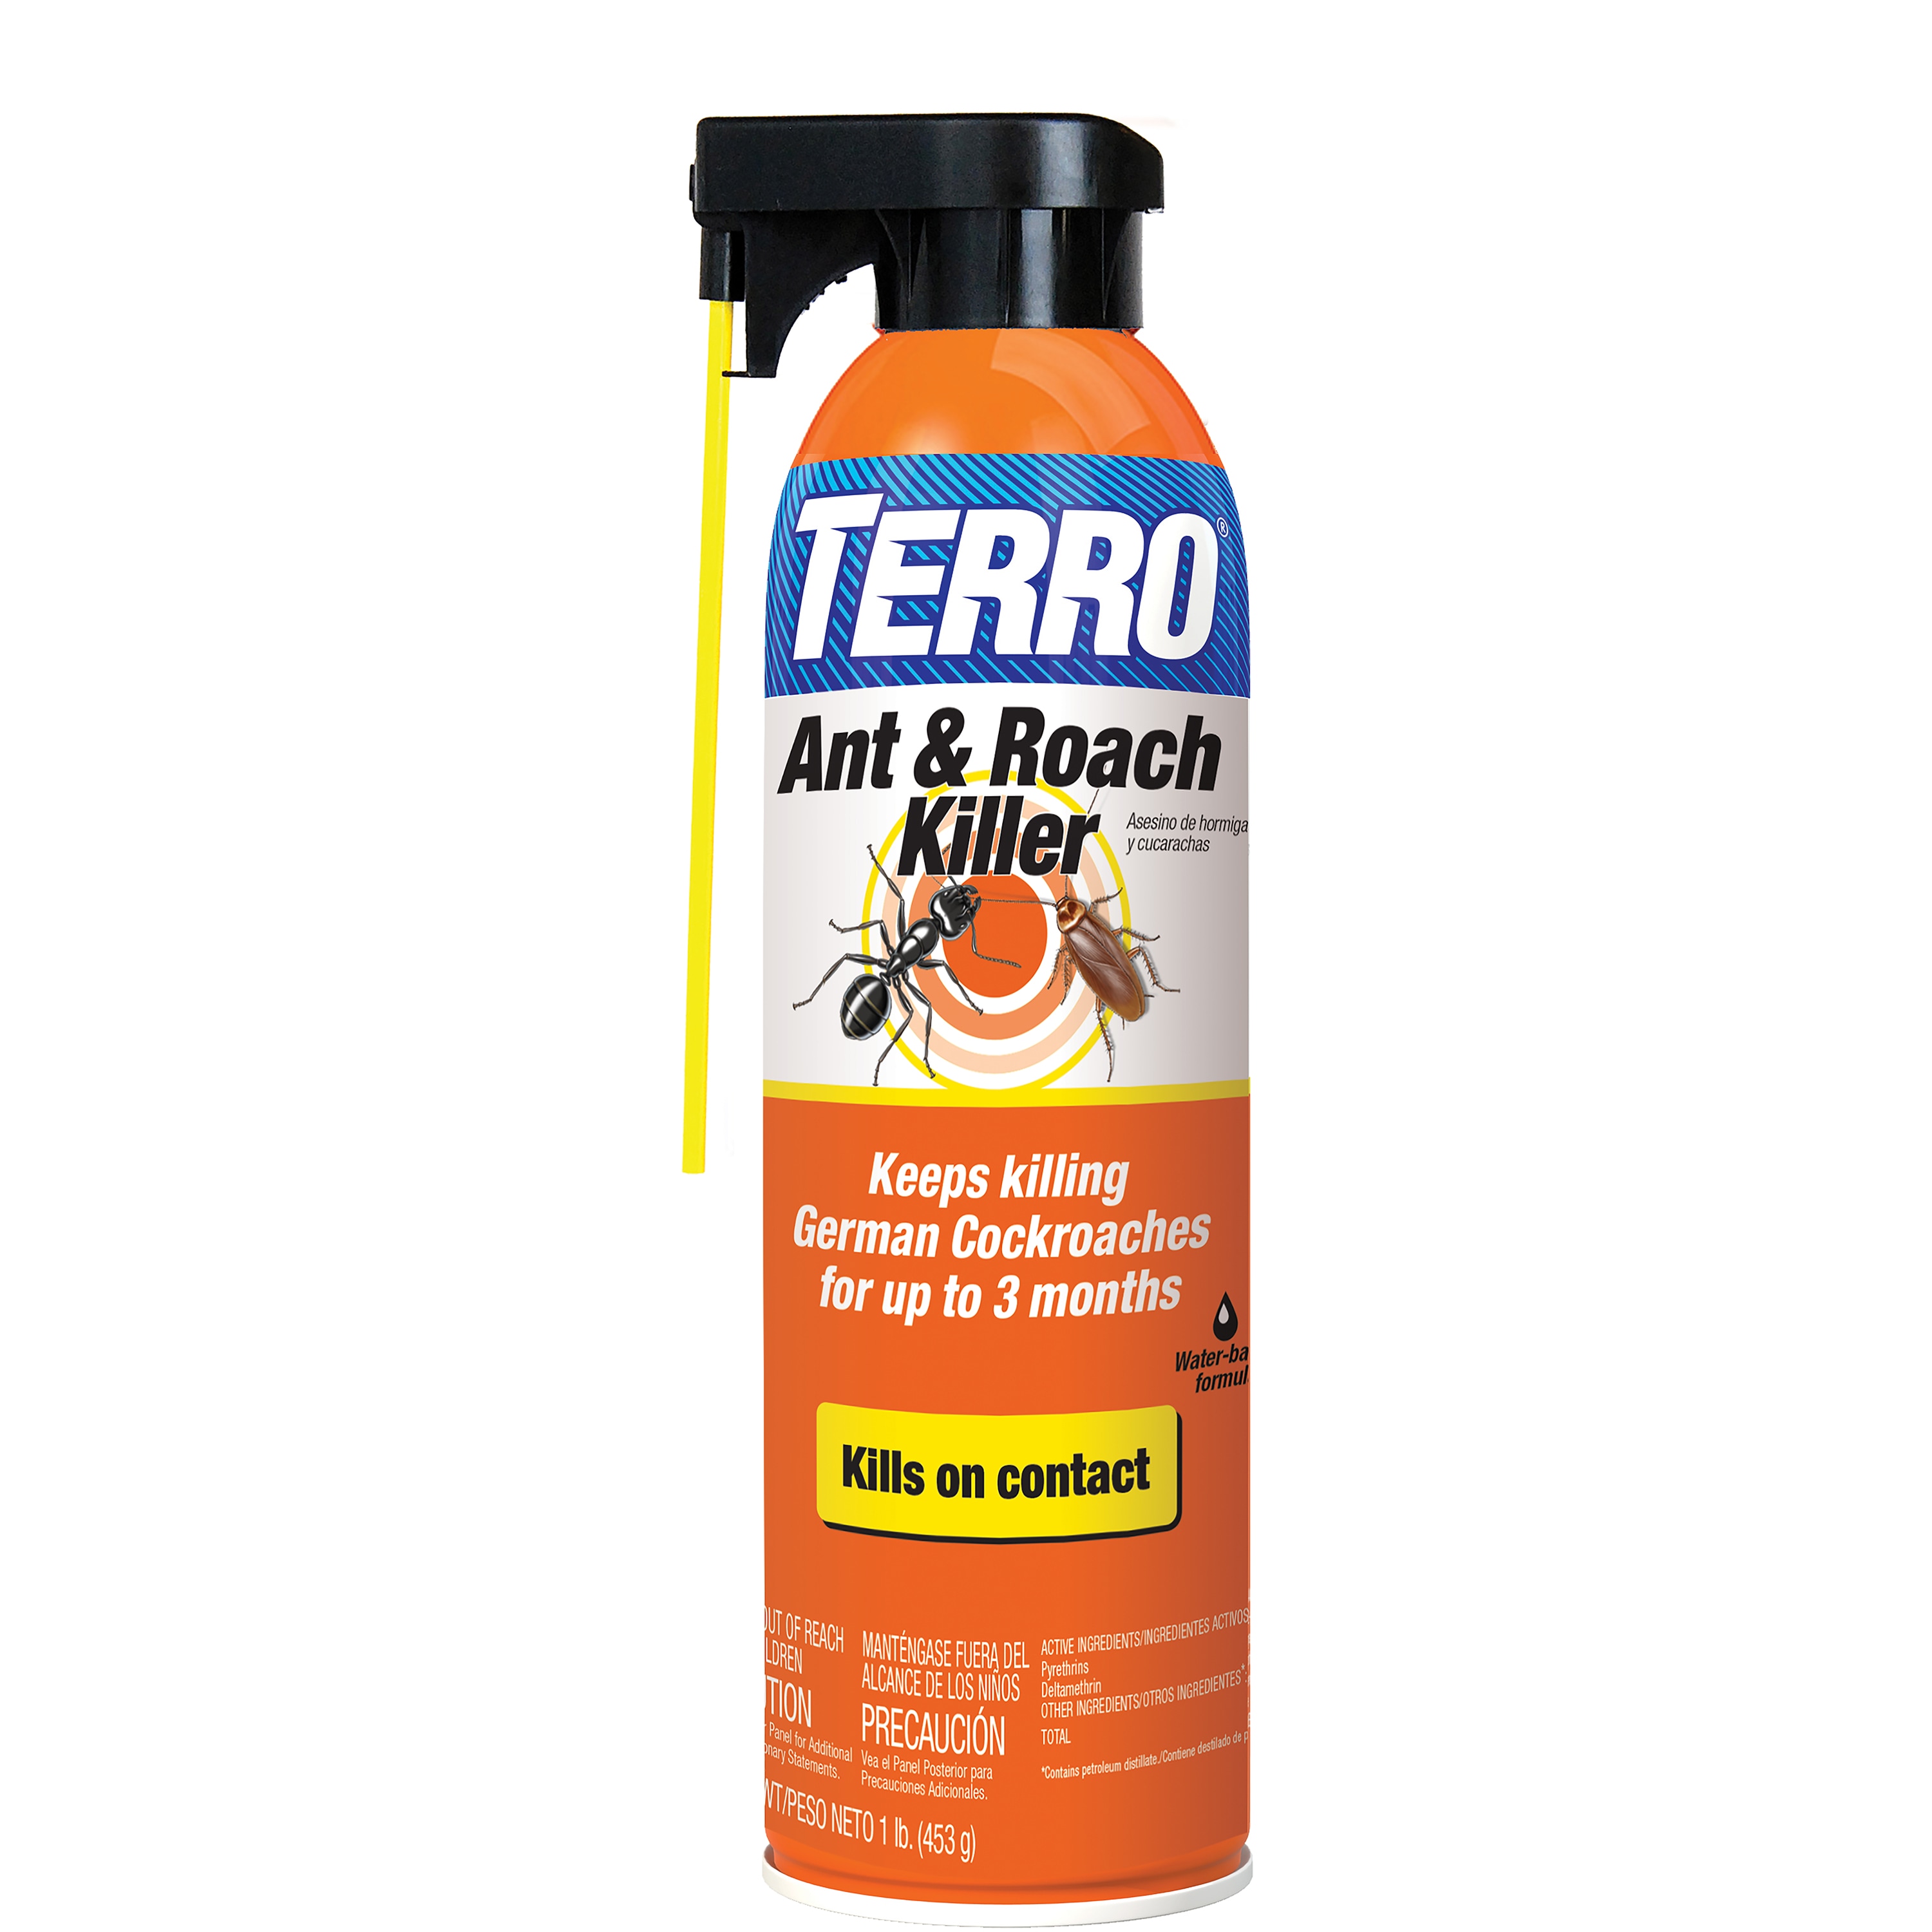 TERRO® Roach Bait Gel